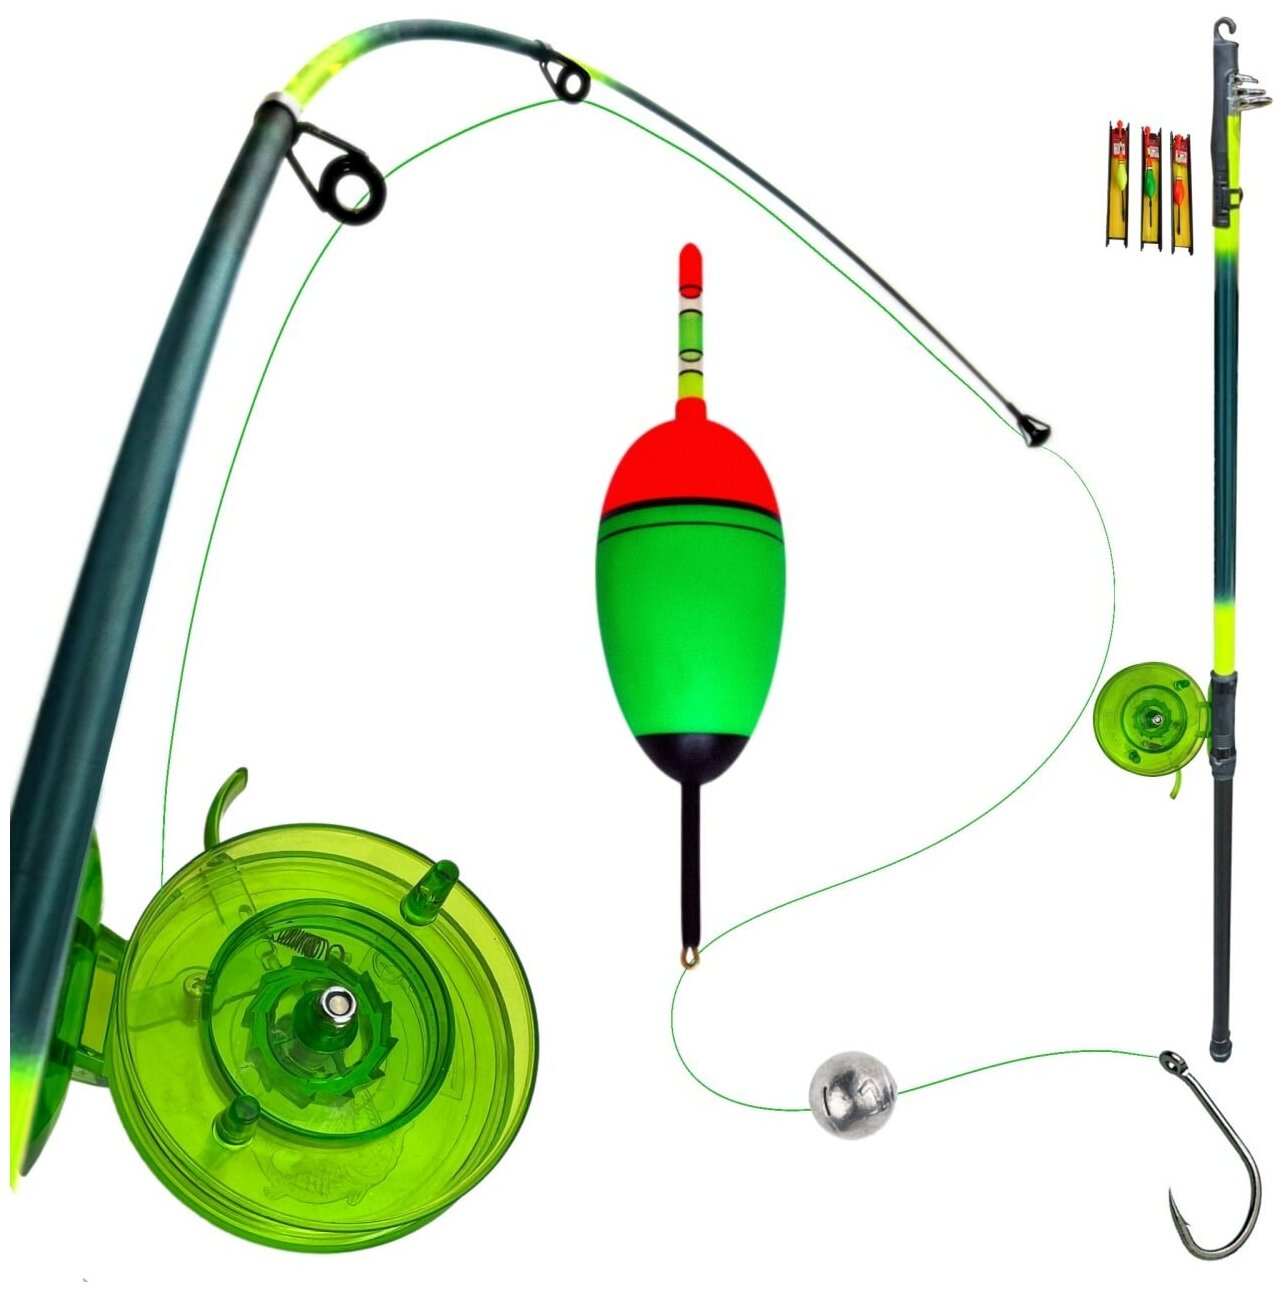 Удочка для ловли на поплавок с набором оснаски, телескопическая, зеленая, 4 м. Набор удочка и оснастка.